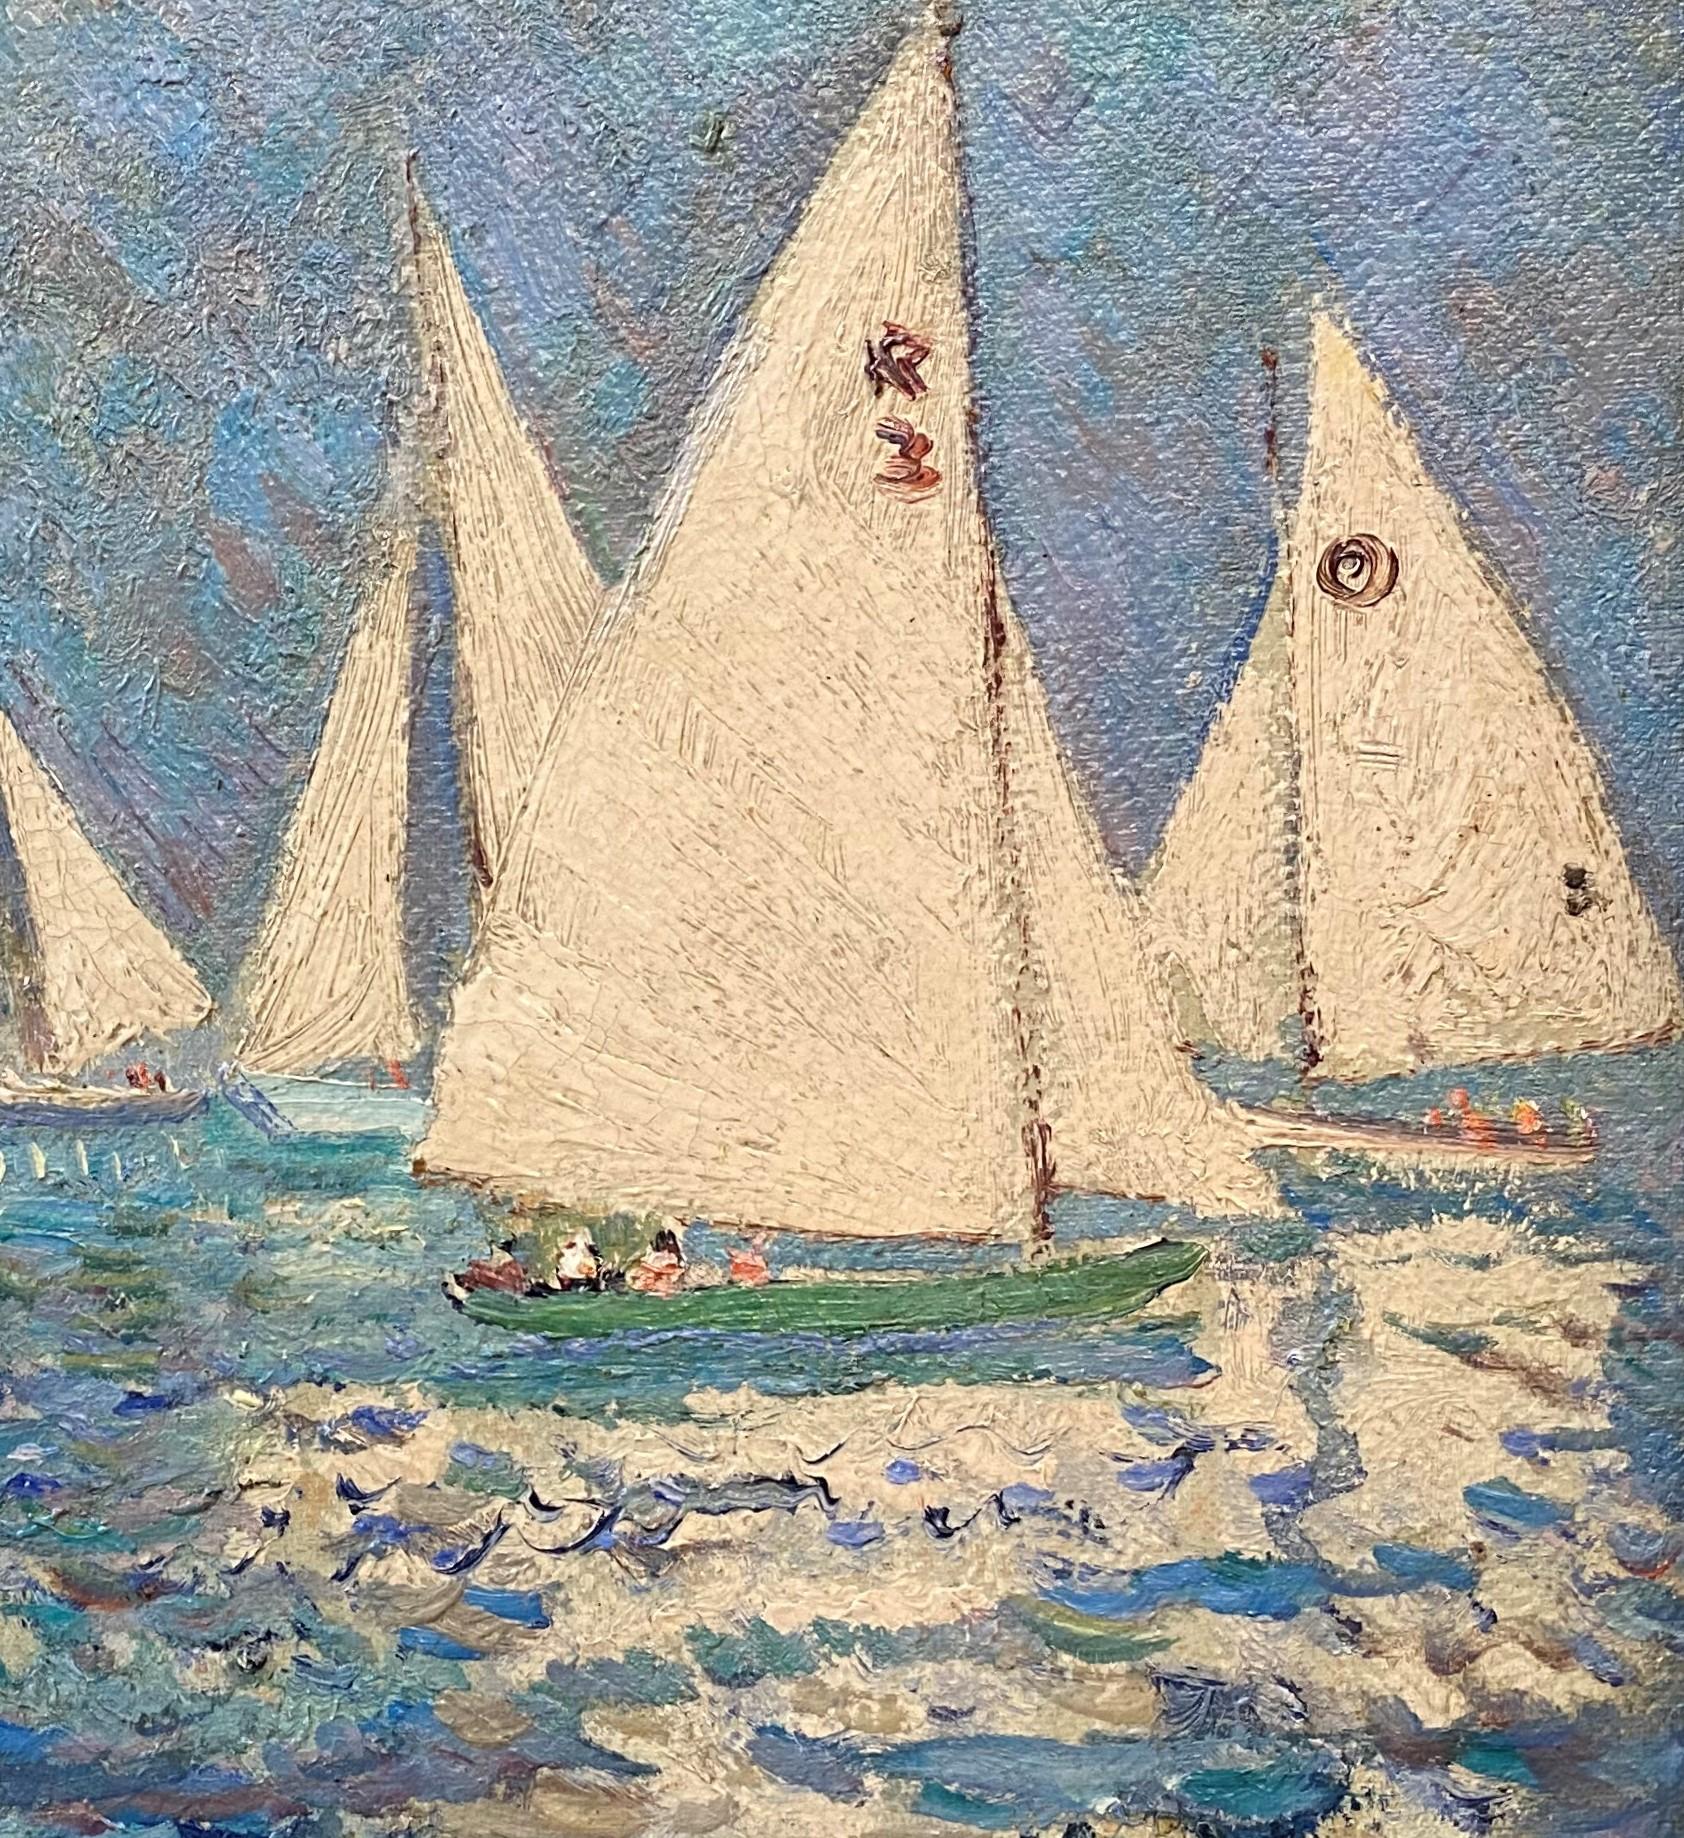 Une belle peinture impressionniste à l'huile de marine de l'artiste australien américain Hayley Marin (1876-1958). Lever est né à Adélaïde, en Australie, et a d'abord étudié au Prince Alfred College d'Adélaïde, puis à la James Ashton's Academy of